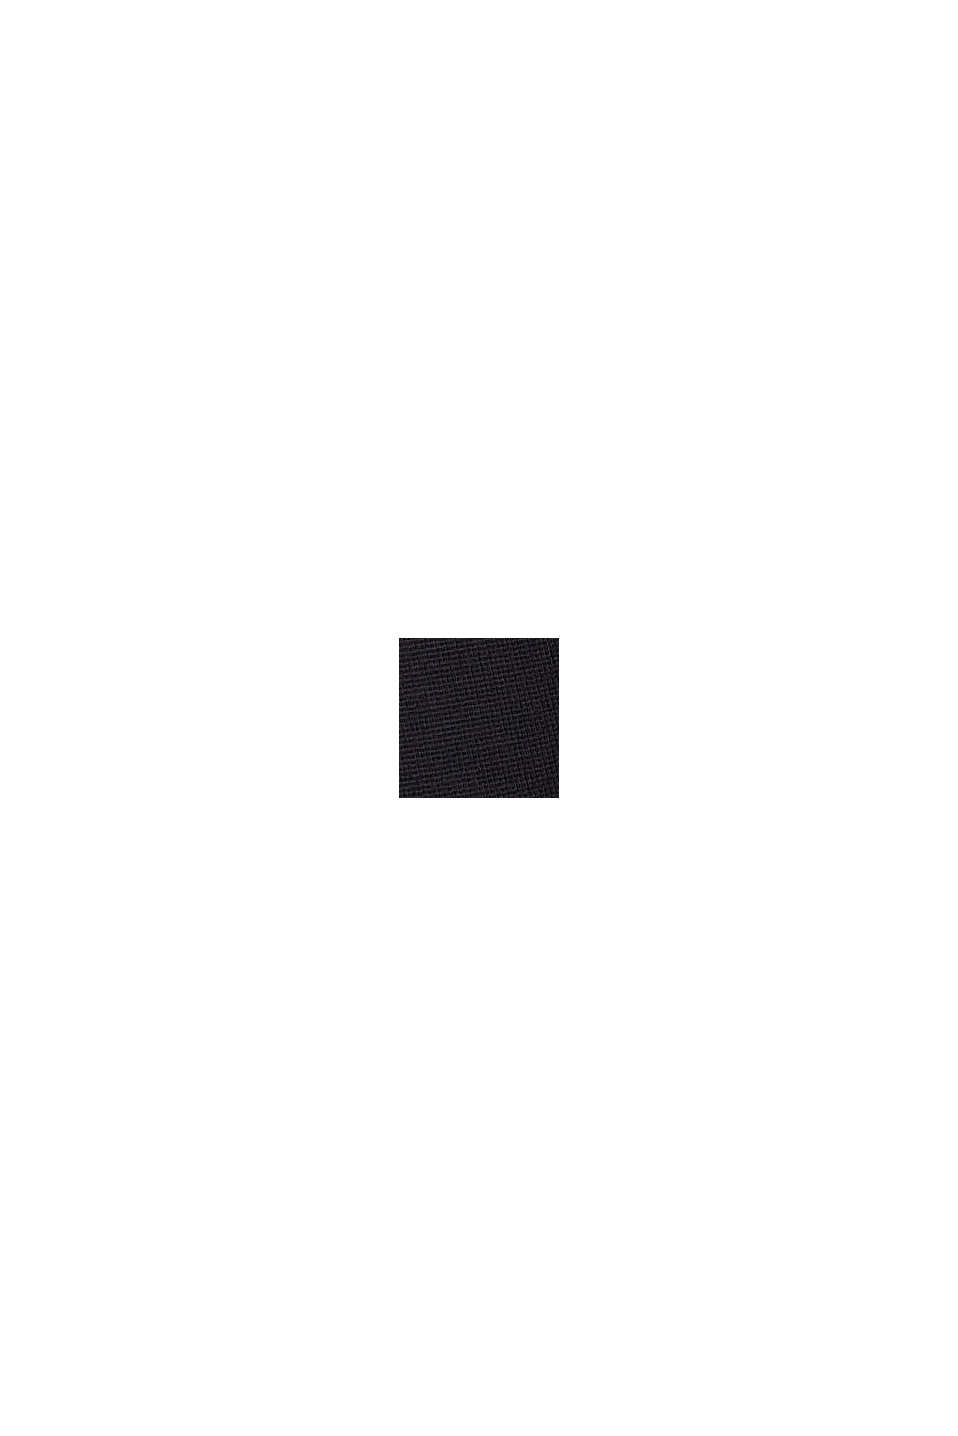 Spódnica mini z dżerseju punto, LENZING™ ECOVERO™, BLACK, swatch